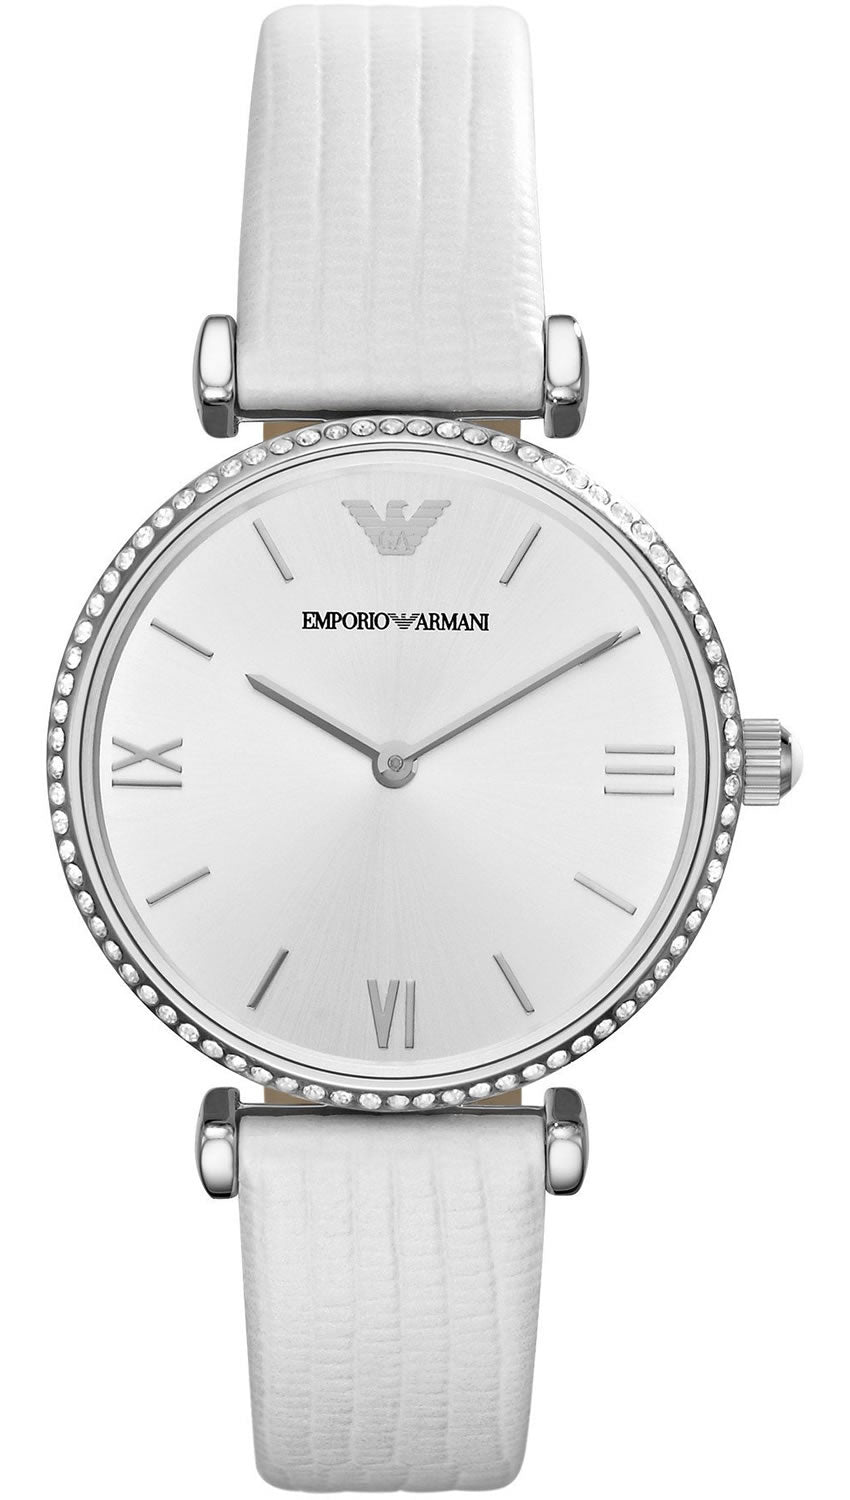 Emporio Armani AR1680 White Dial White Leather strap ladies Watch ...